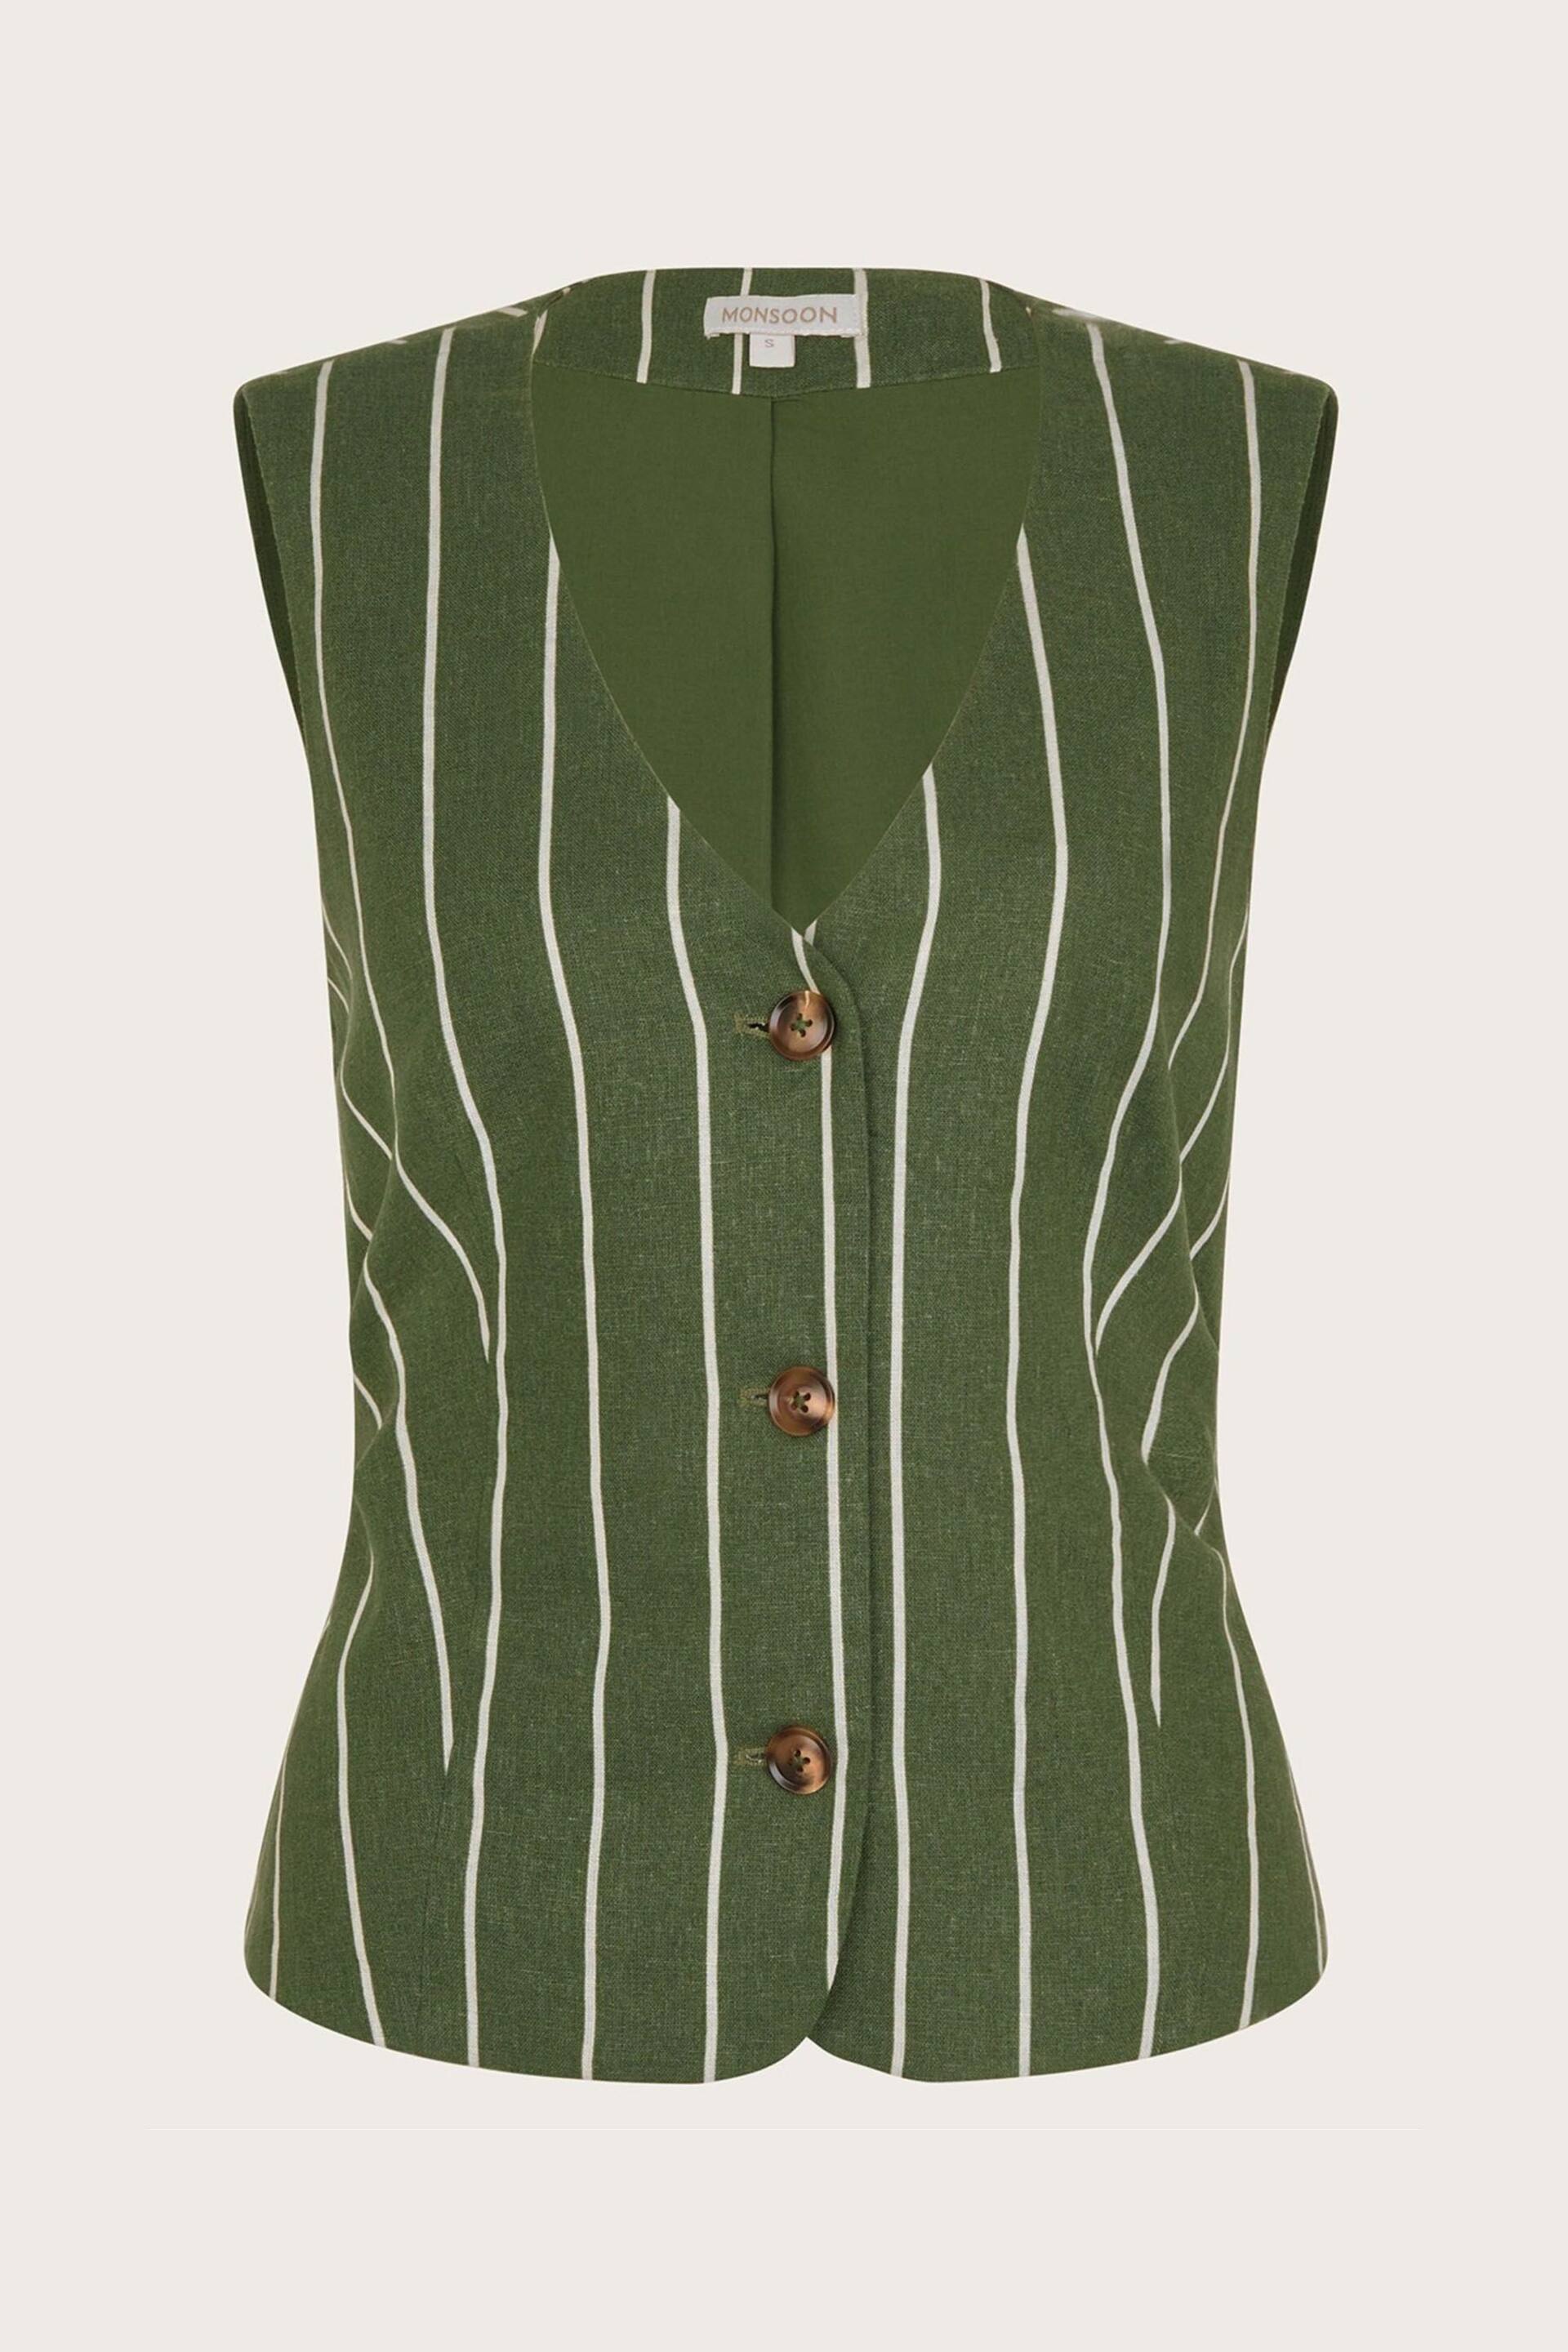 Monsoon Green Susan Stripe Waistcoat In Linen Blend - Image 6 of 6